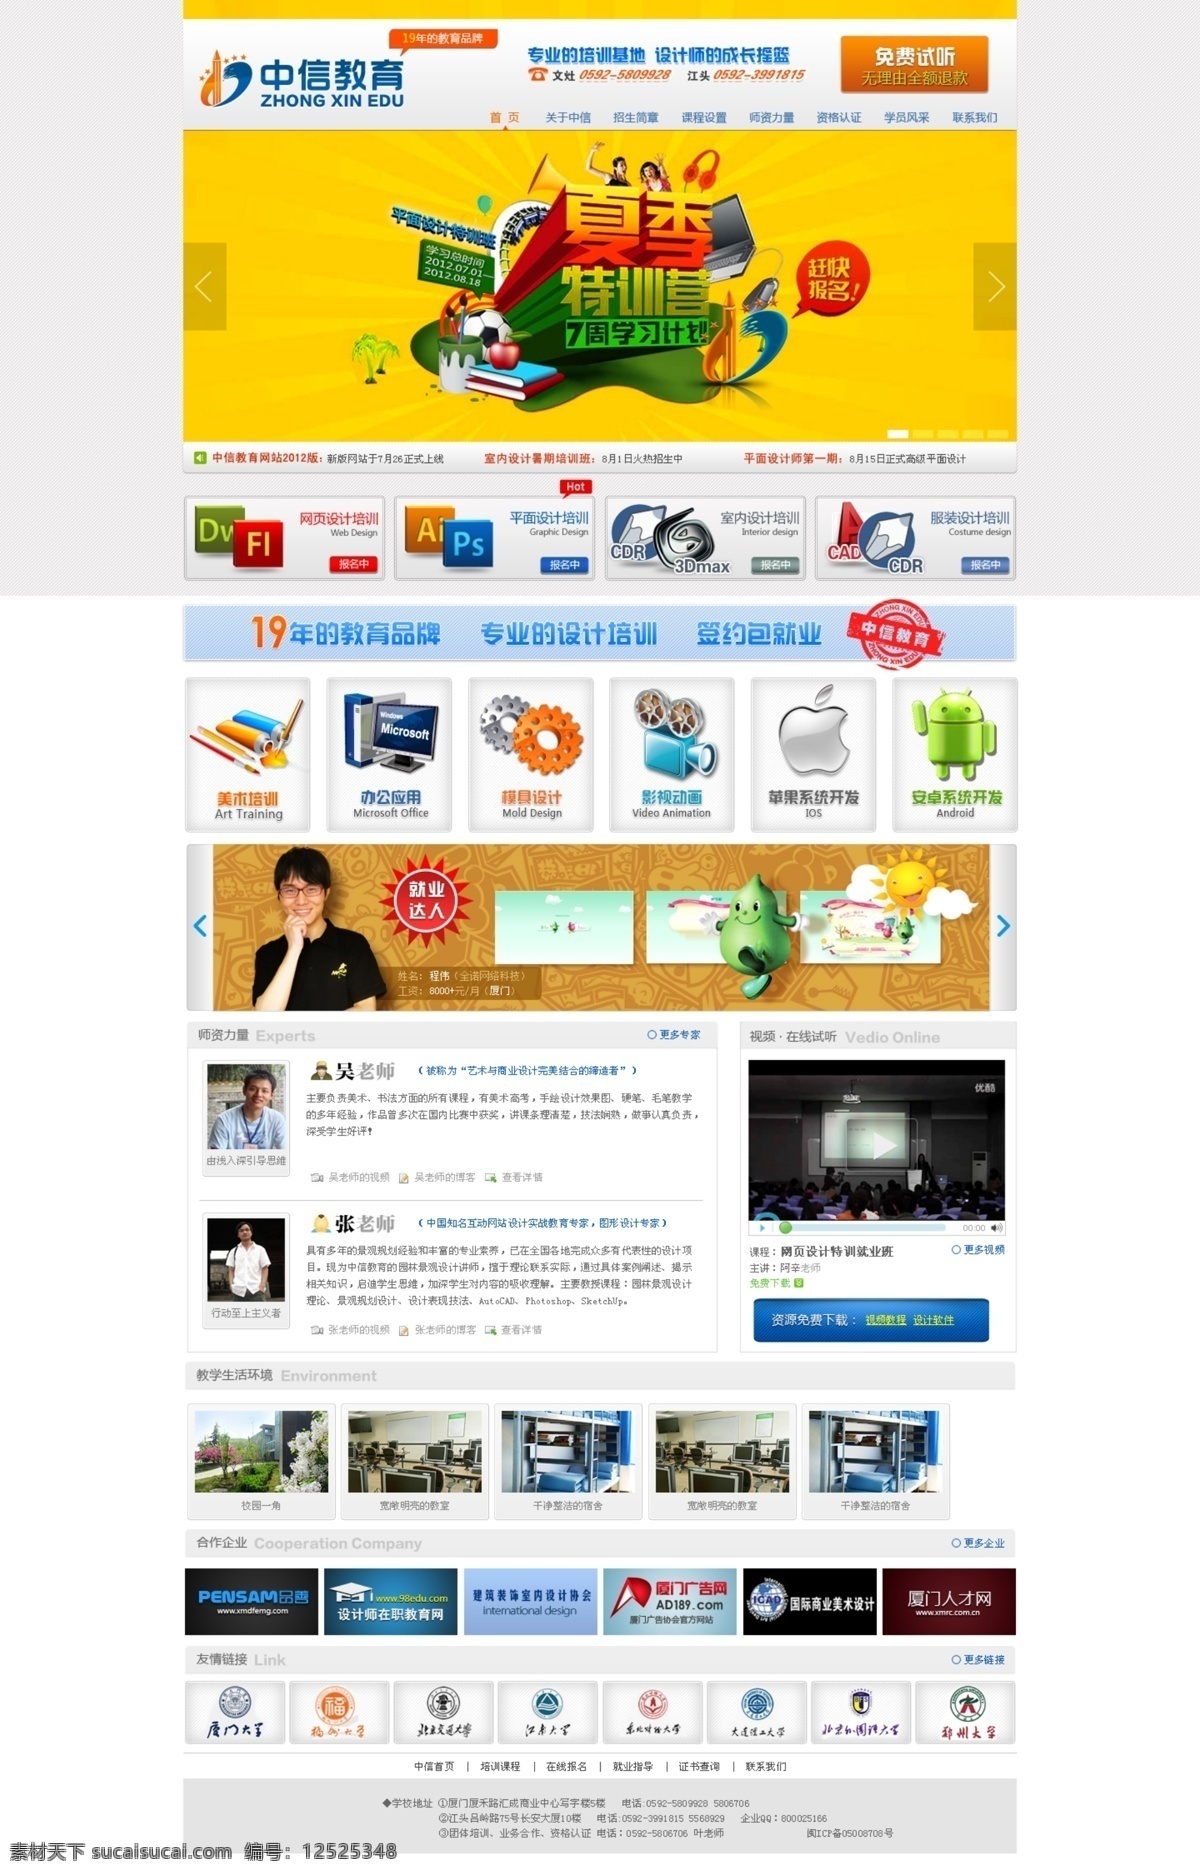 计算机 教育网站 模板 培训班 软件 设计网站 网页模板 源文件 网站 模板下载 中文模版 矢量图 现代科技